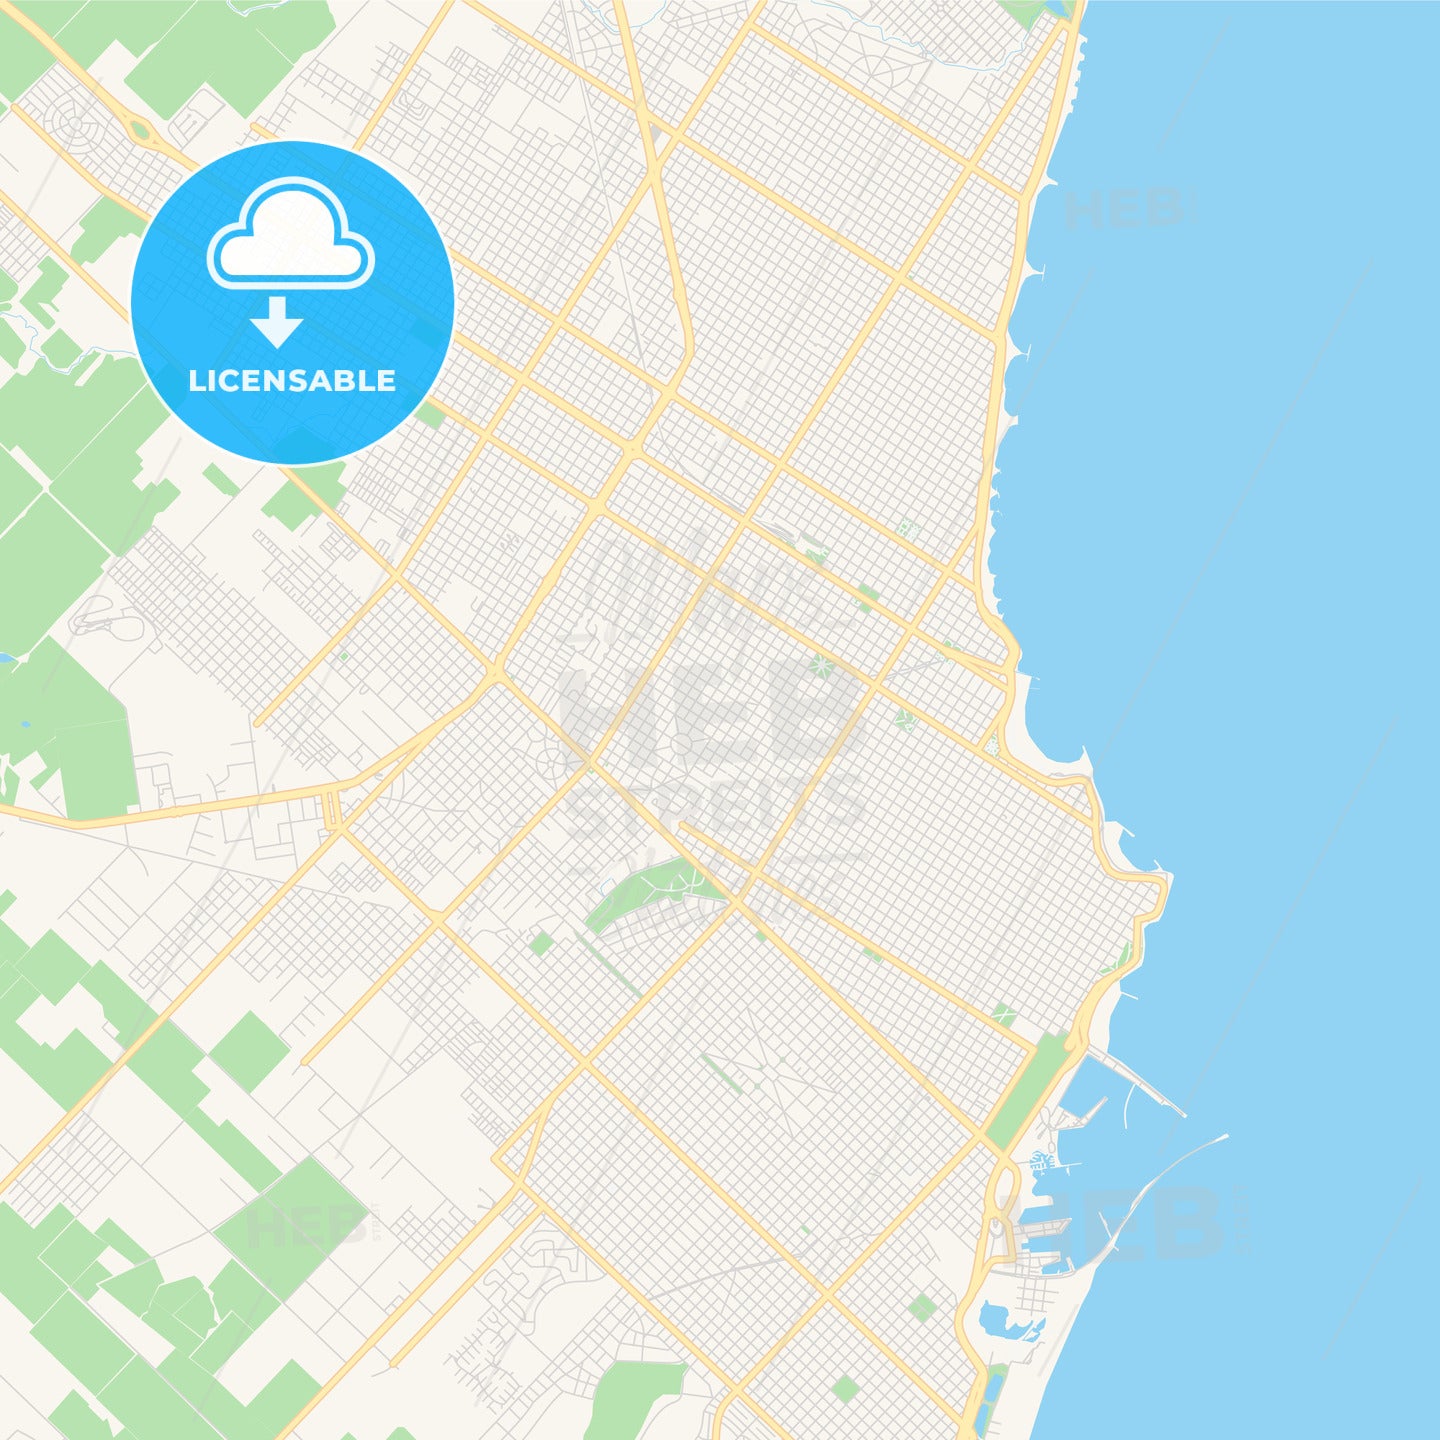 Printable street map of Mar del Plata, Argentina